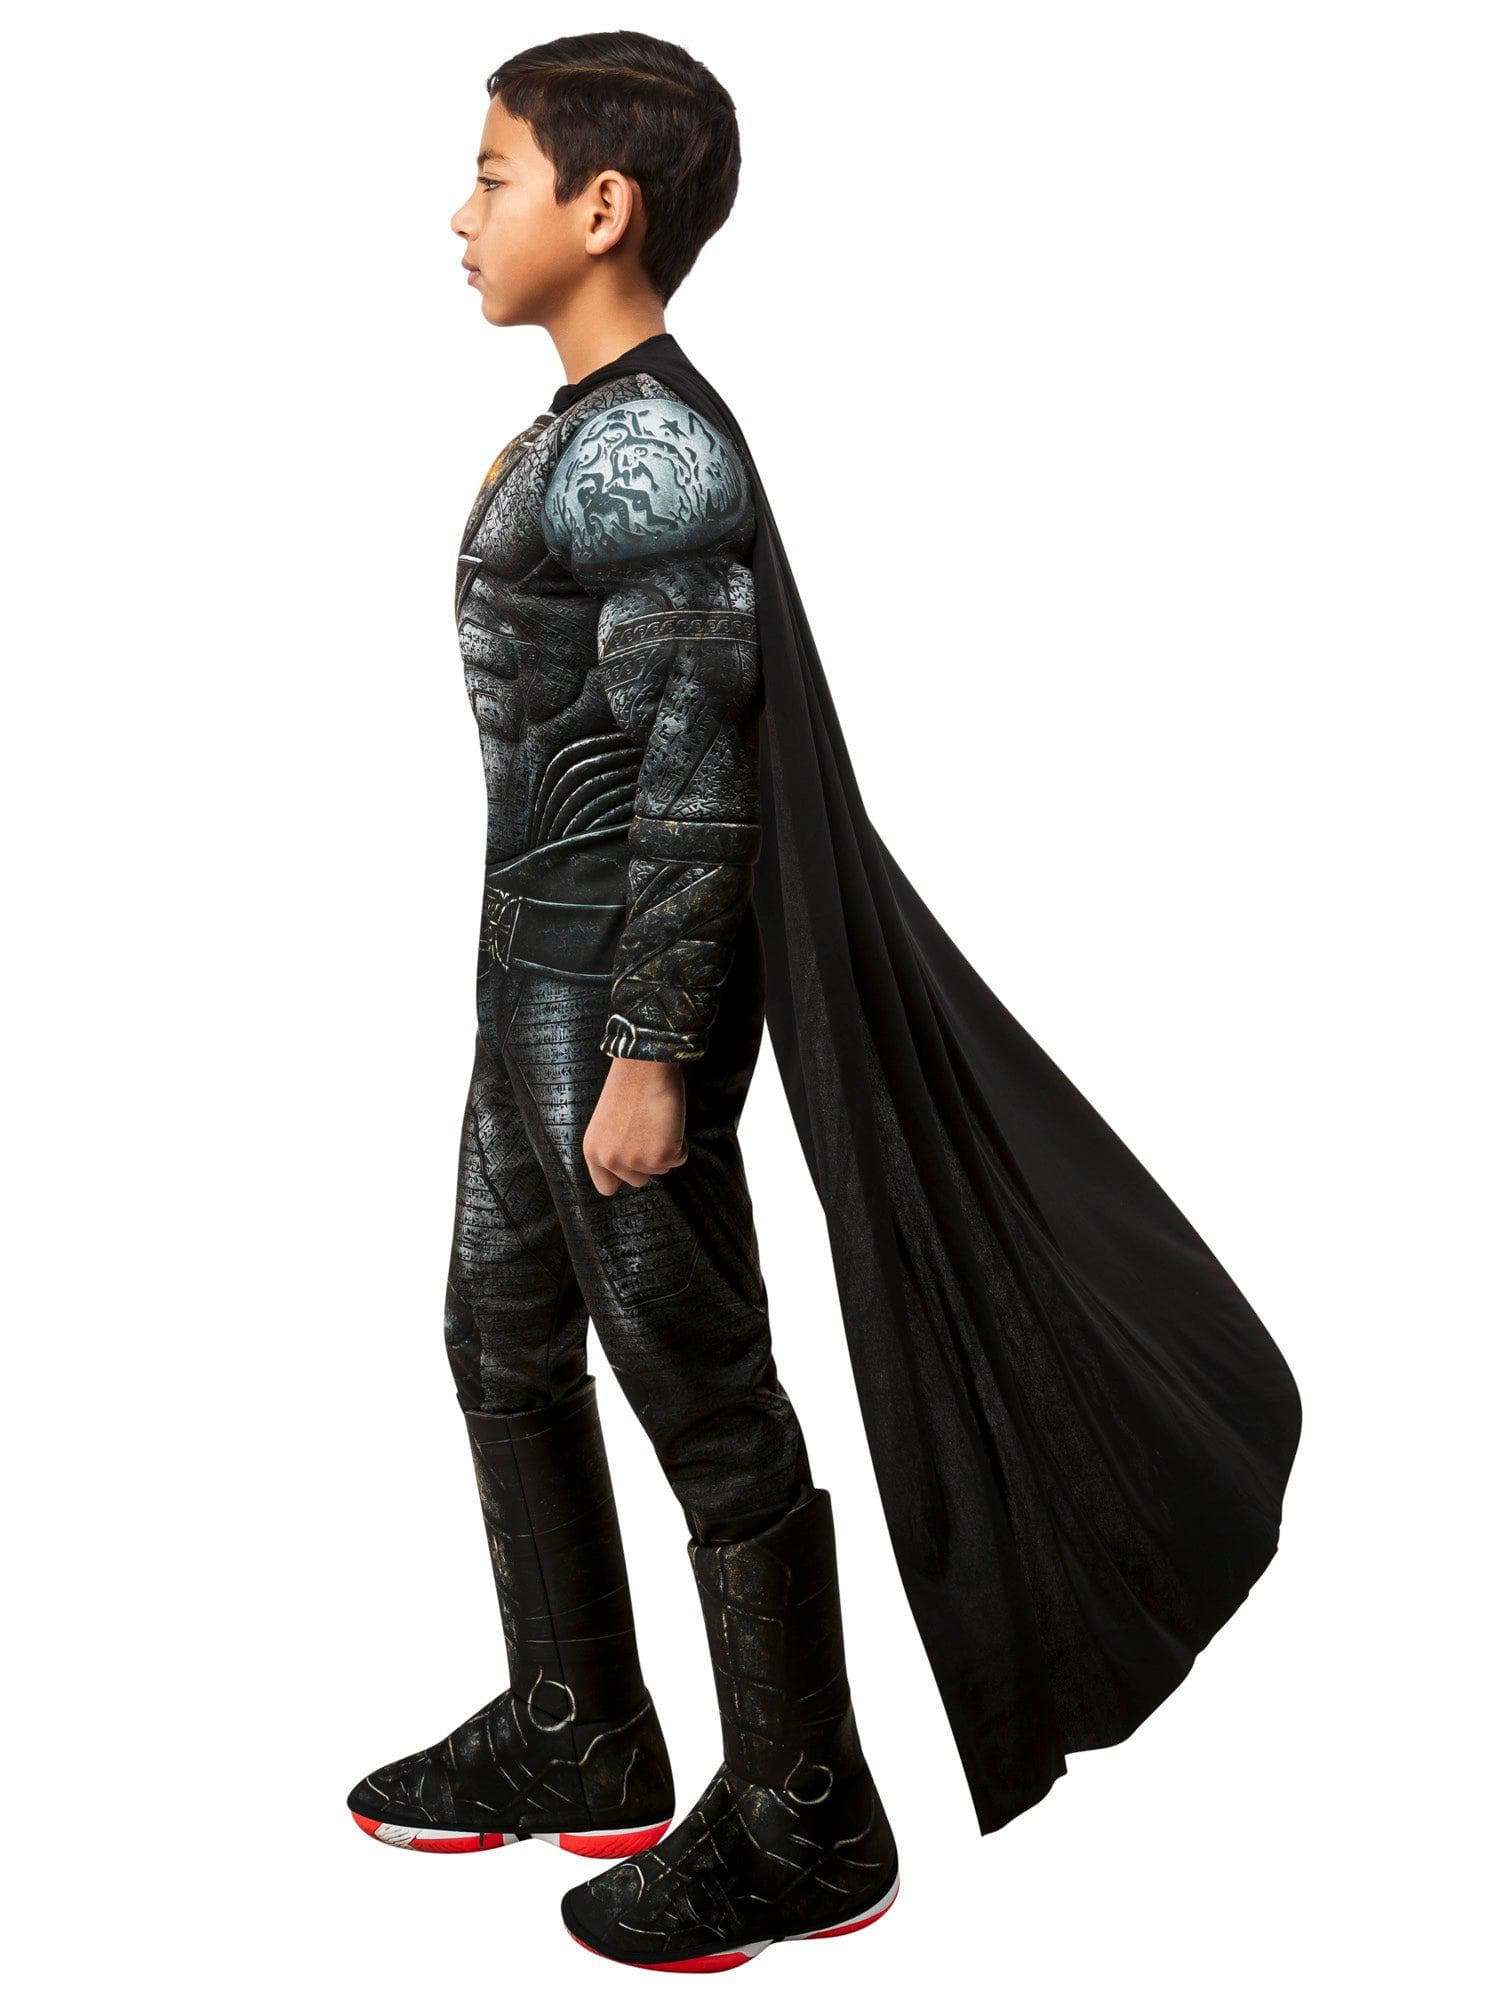 Boys' DC Comics Black Adam Costume - Deluxe - costumes.com